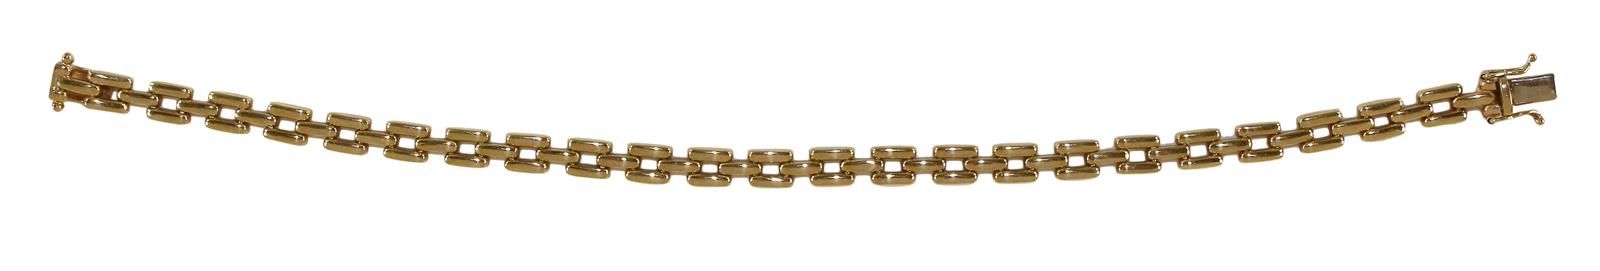 Armband 585 Gelbgold en estilo Art Deco. Elementos cuadrados y flexibles. Delica&hellip;